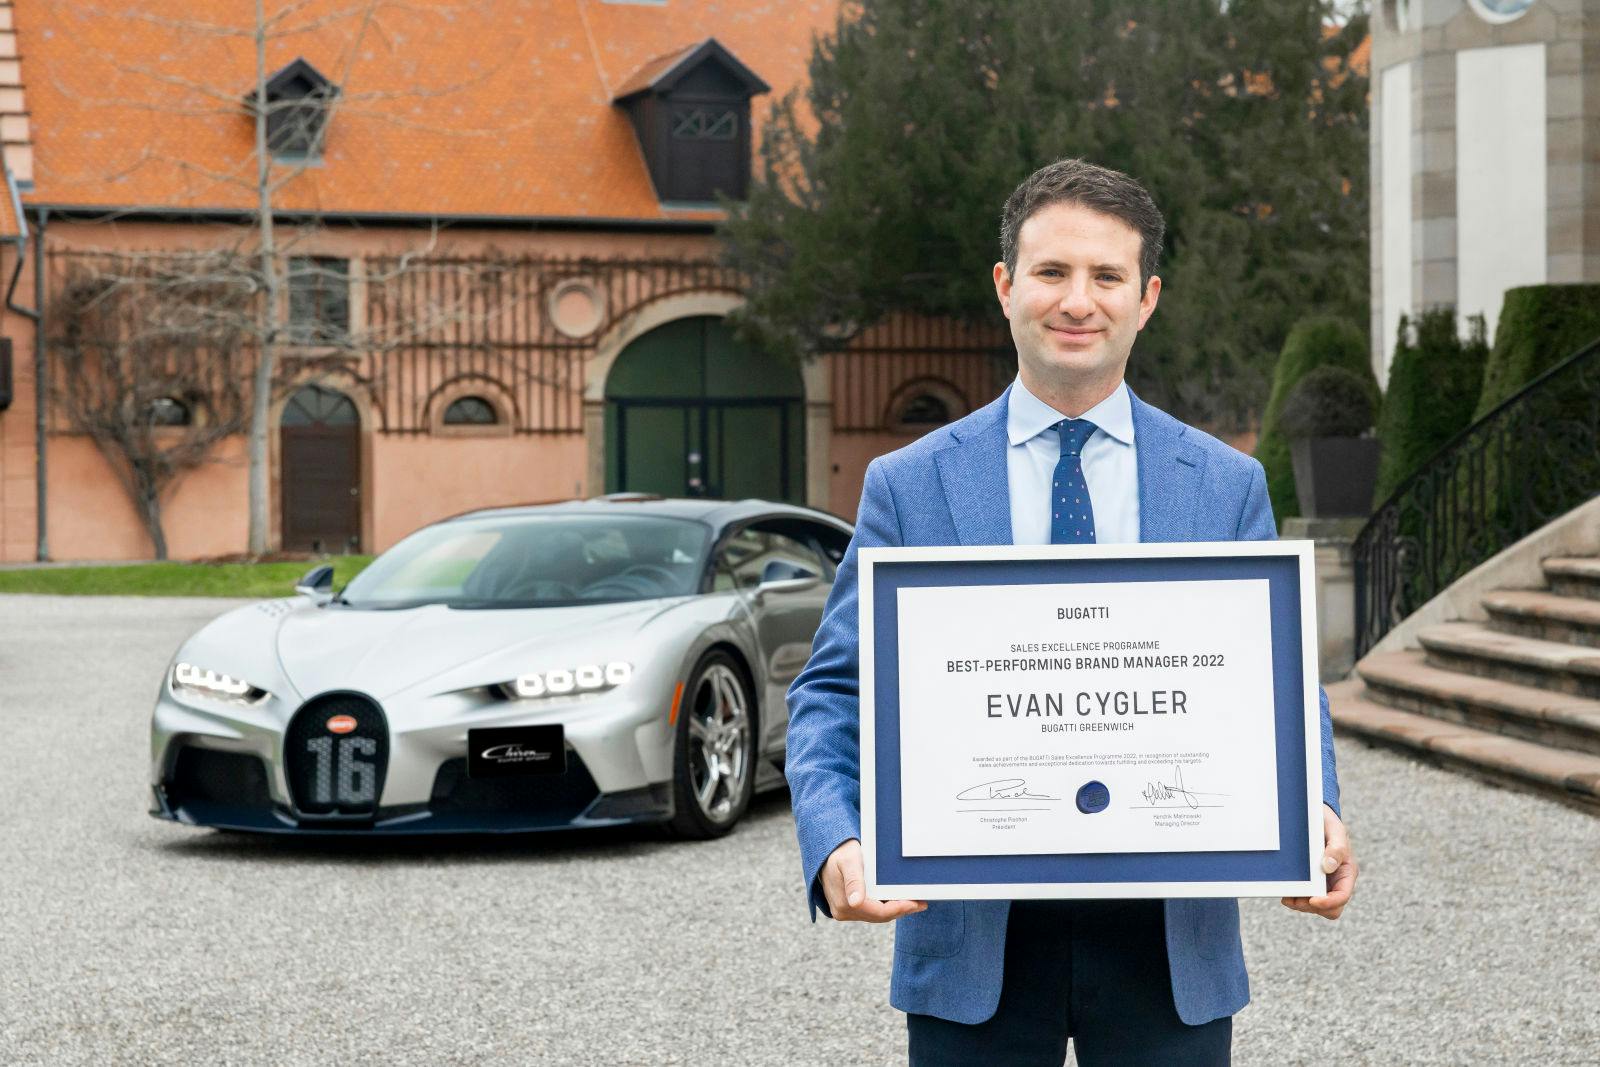 Als Gewinner des Bugatti Sales Excellence Programme 2022 wird Evan Cygler einen Chiron Super Sport mit über 400 km/h auf der Rennstrecke von Cape Canaveral in Florida fahren.